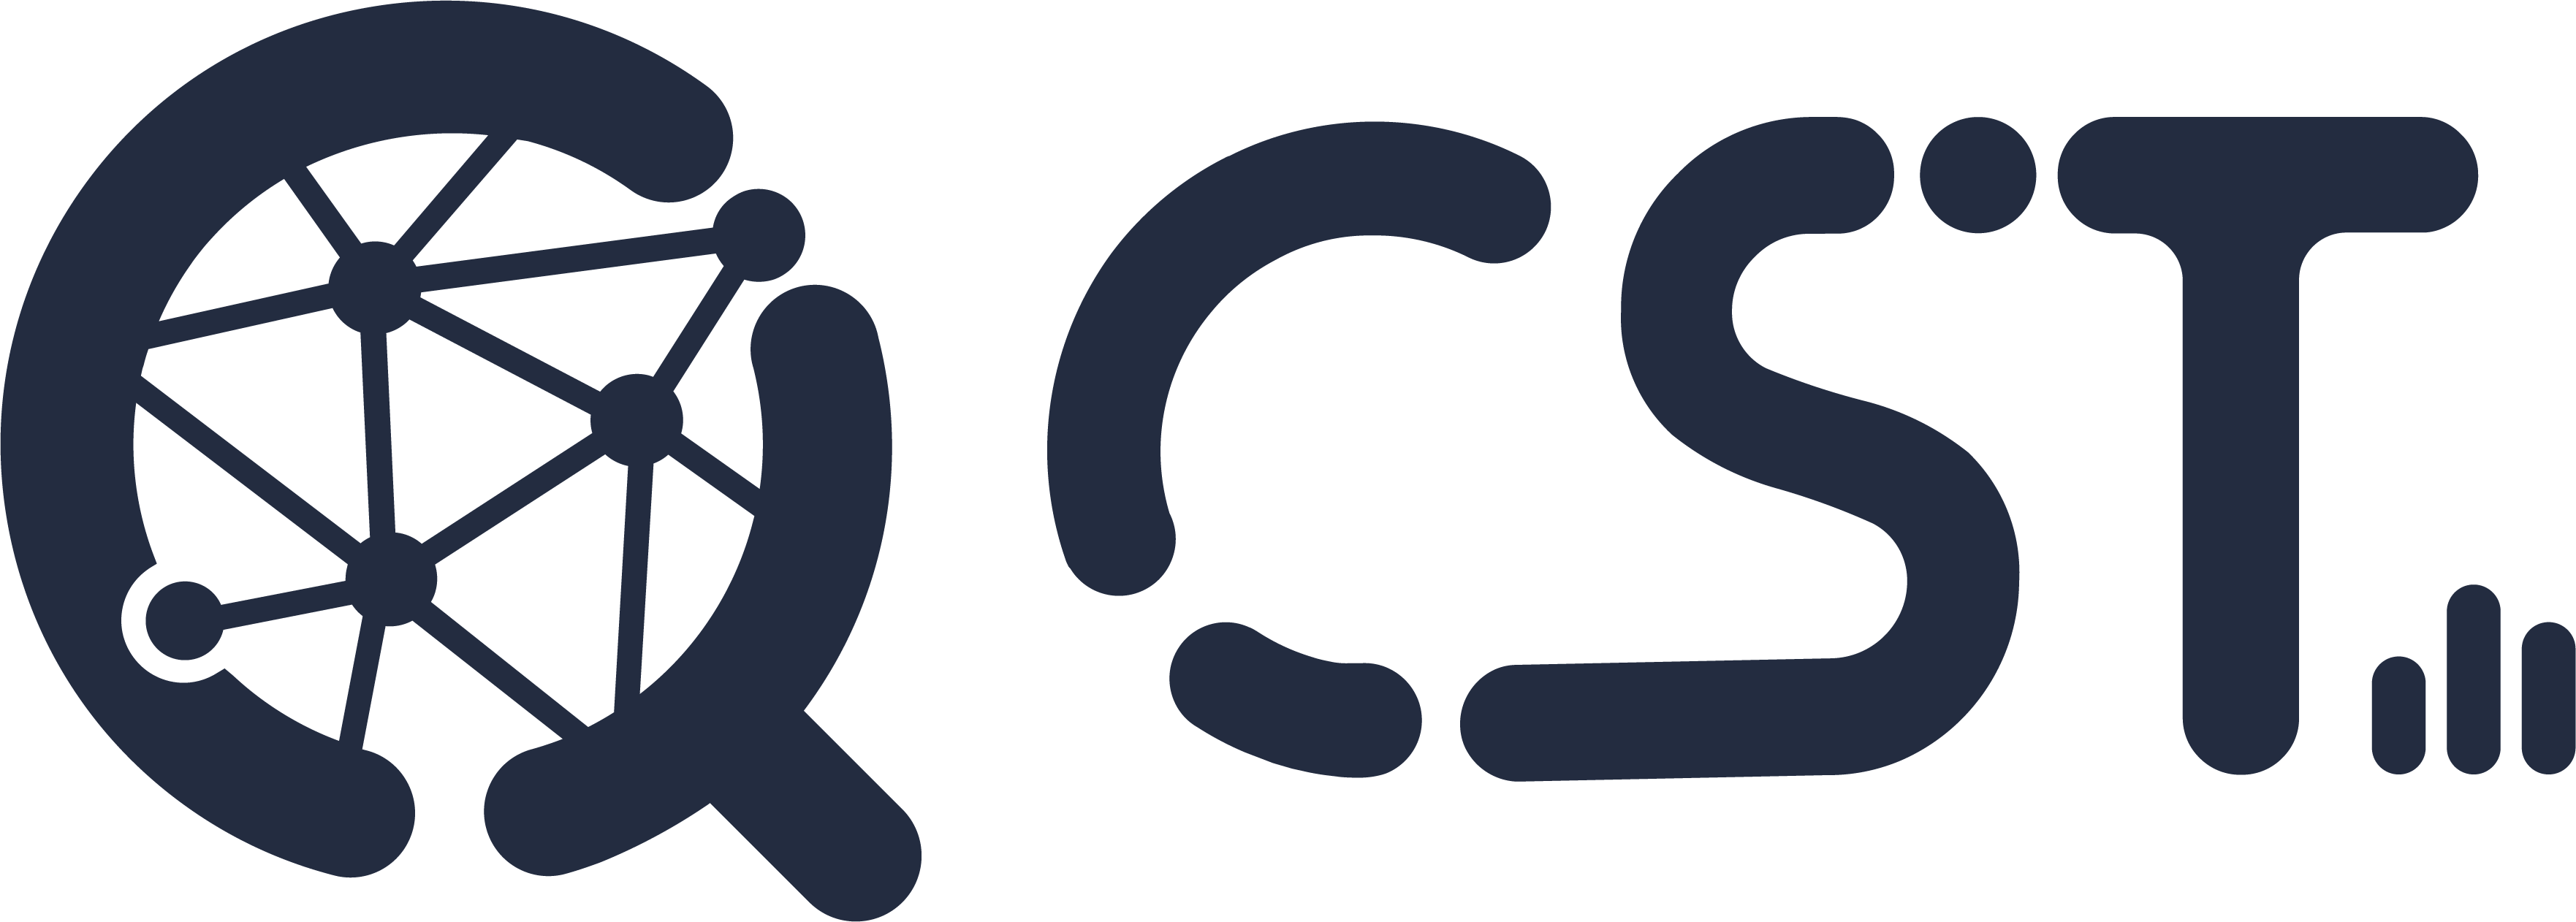 CryptoSearchTools Logo